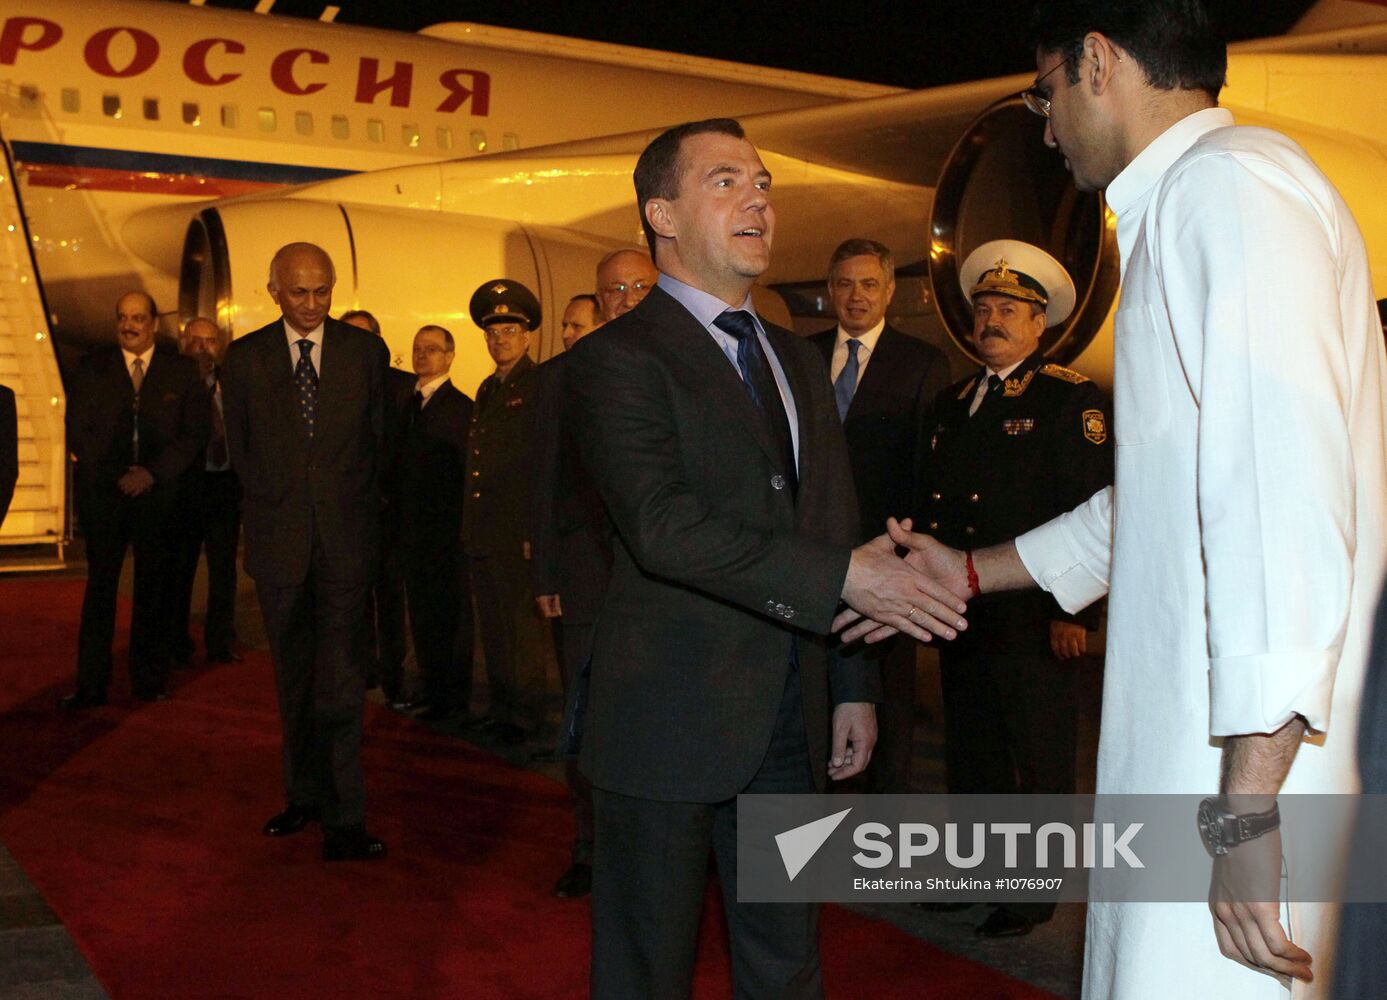 Dmitry Medvedev arrives in New Delhi